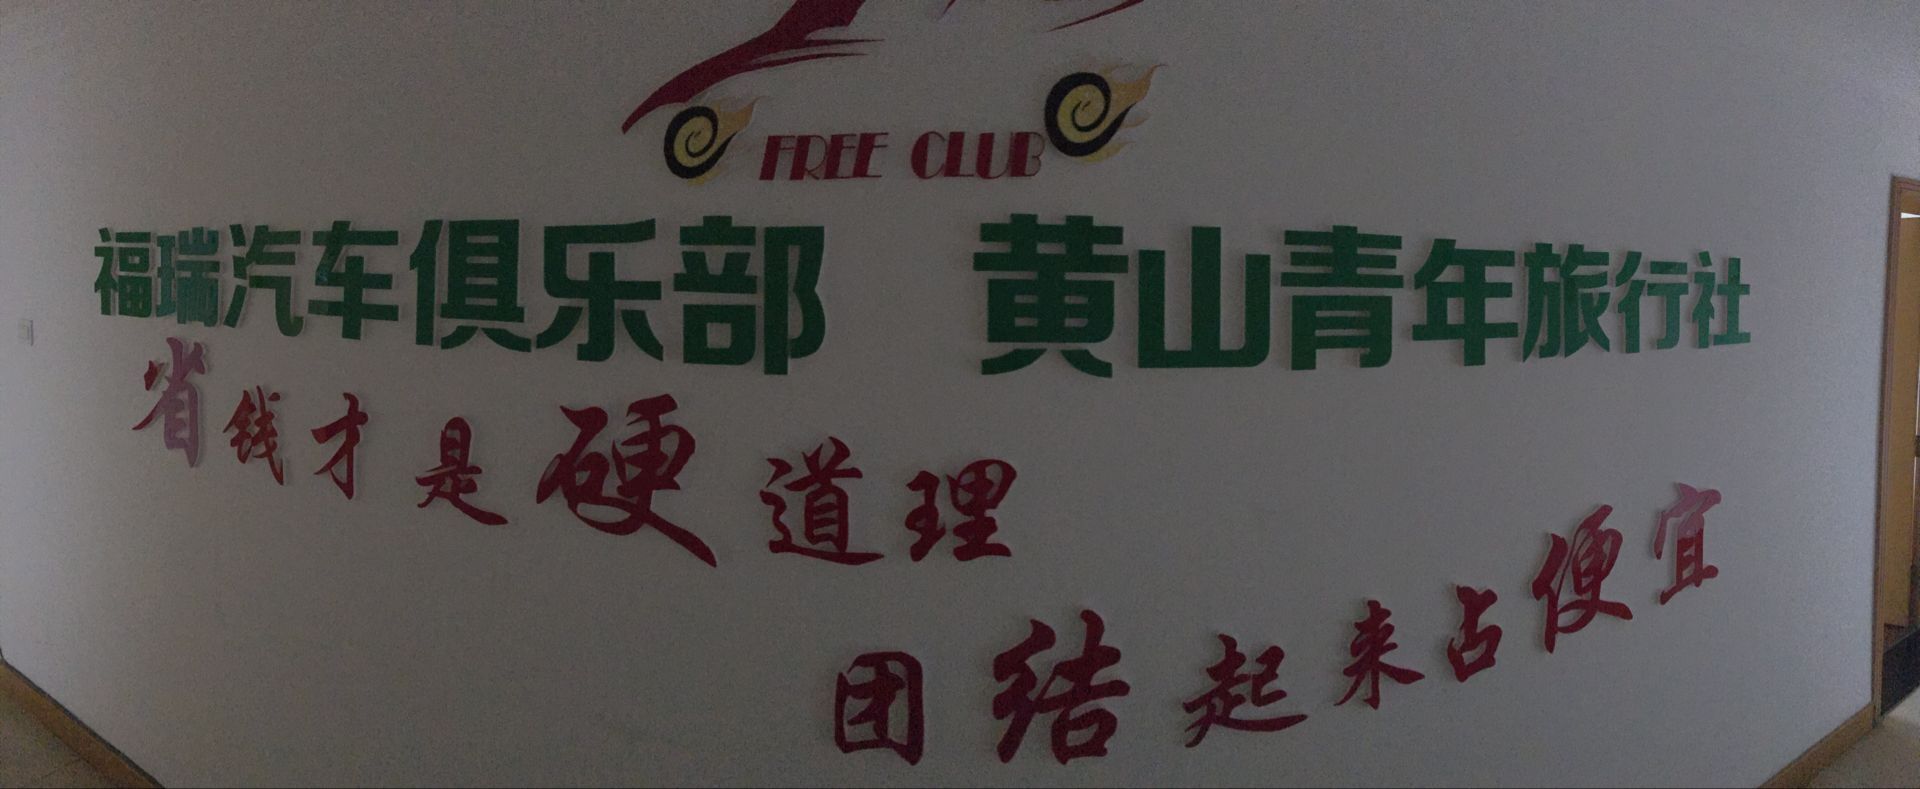 黃(huáng)山(shān)福瑞汽車(chē)俱樂(yuè)部有限責任公司